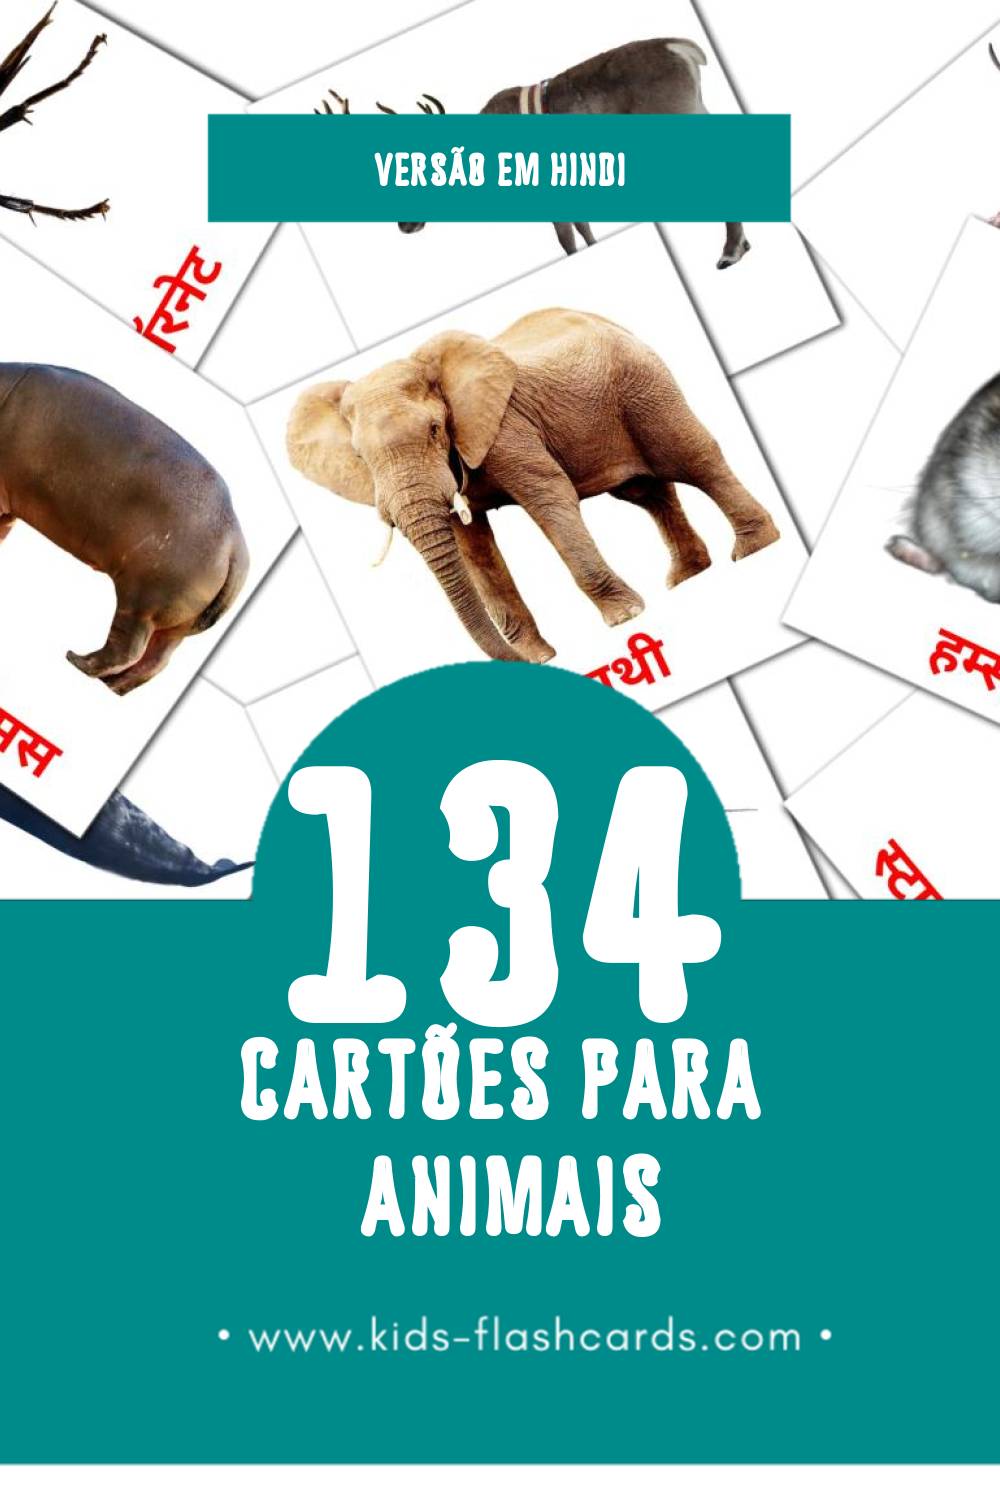 Flashcards de जानवर Visuais para Toddlers (134 cartões em Hindi)